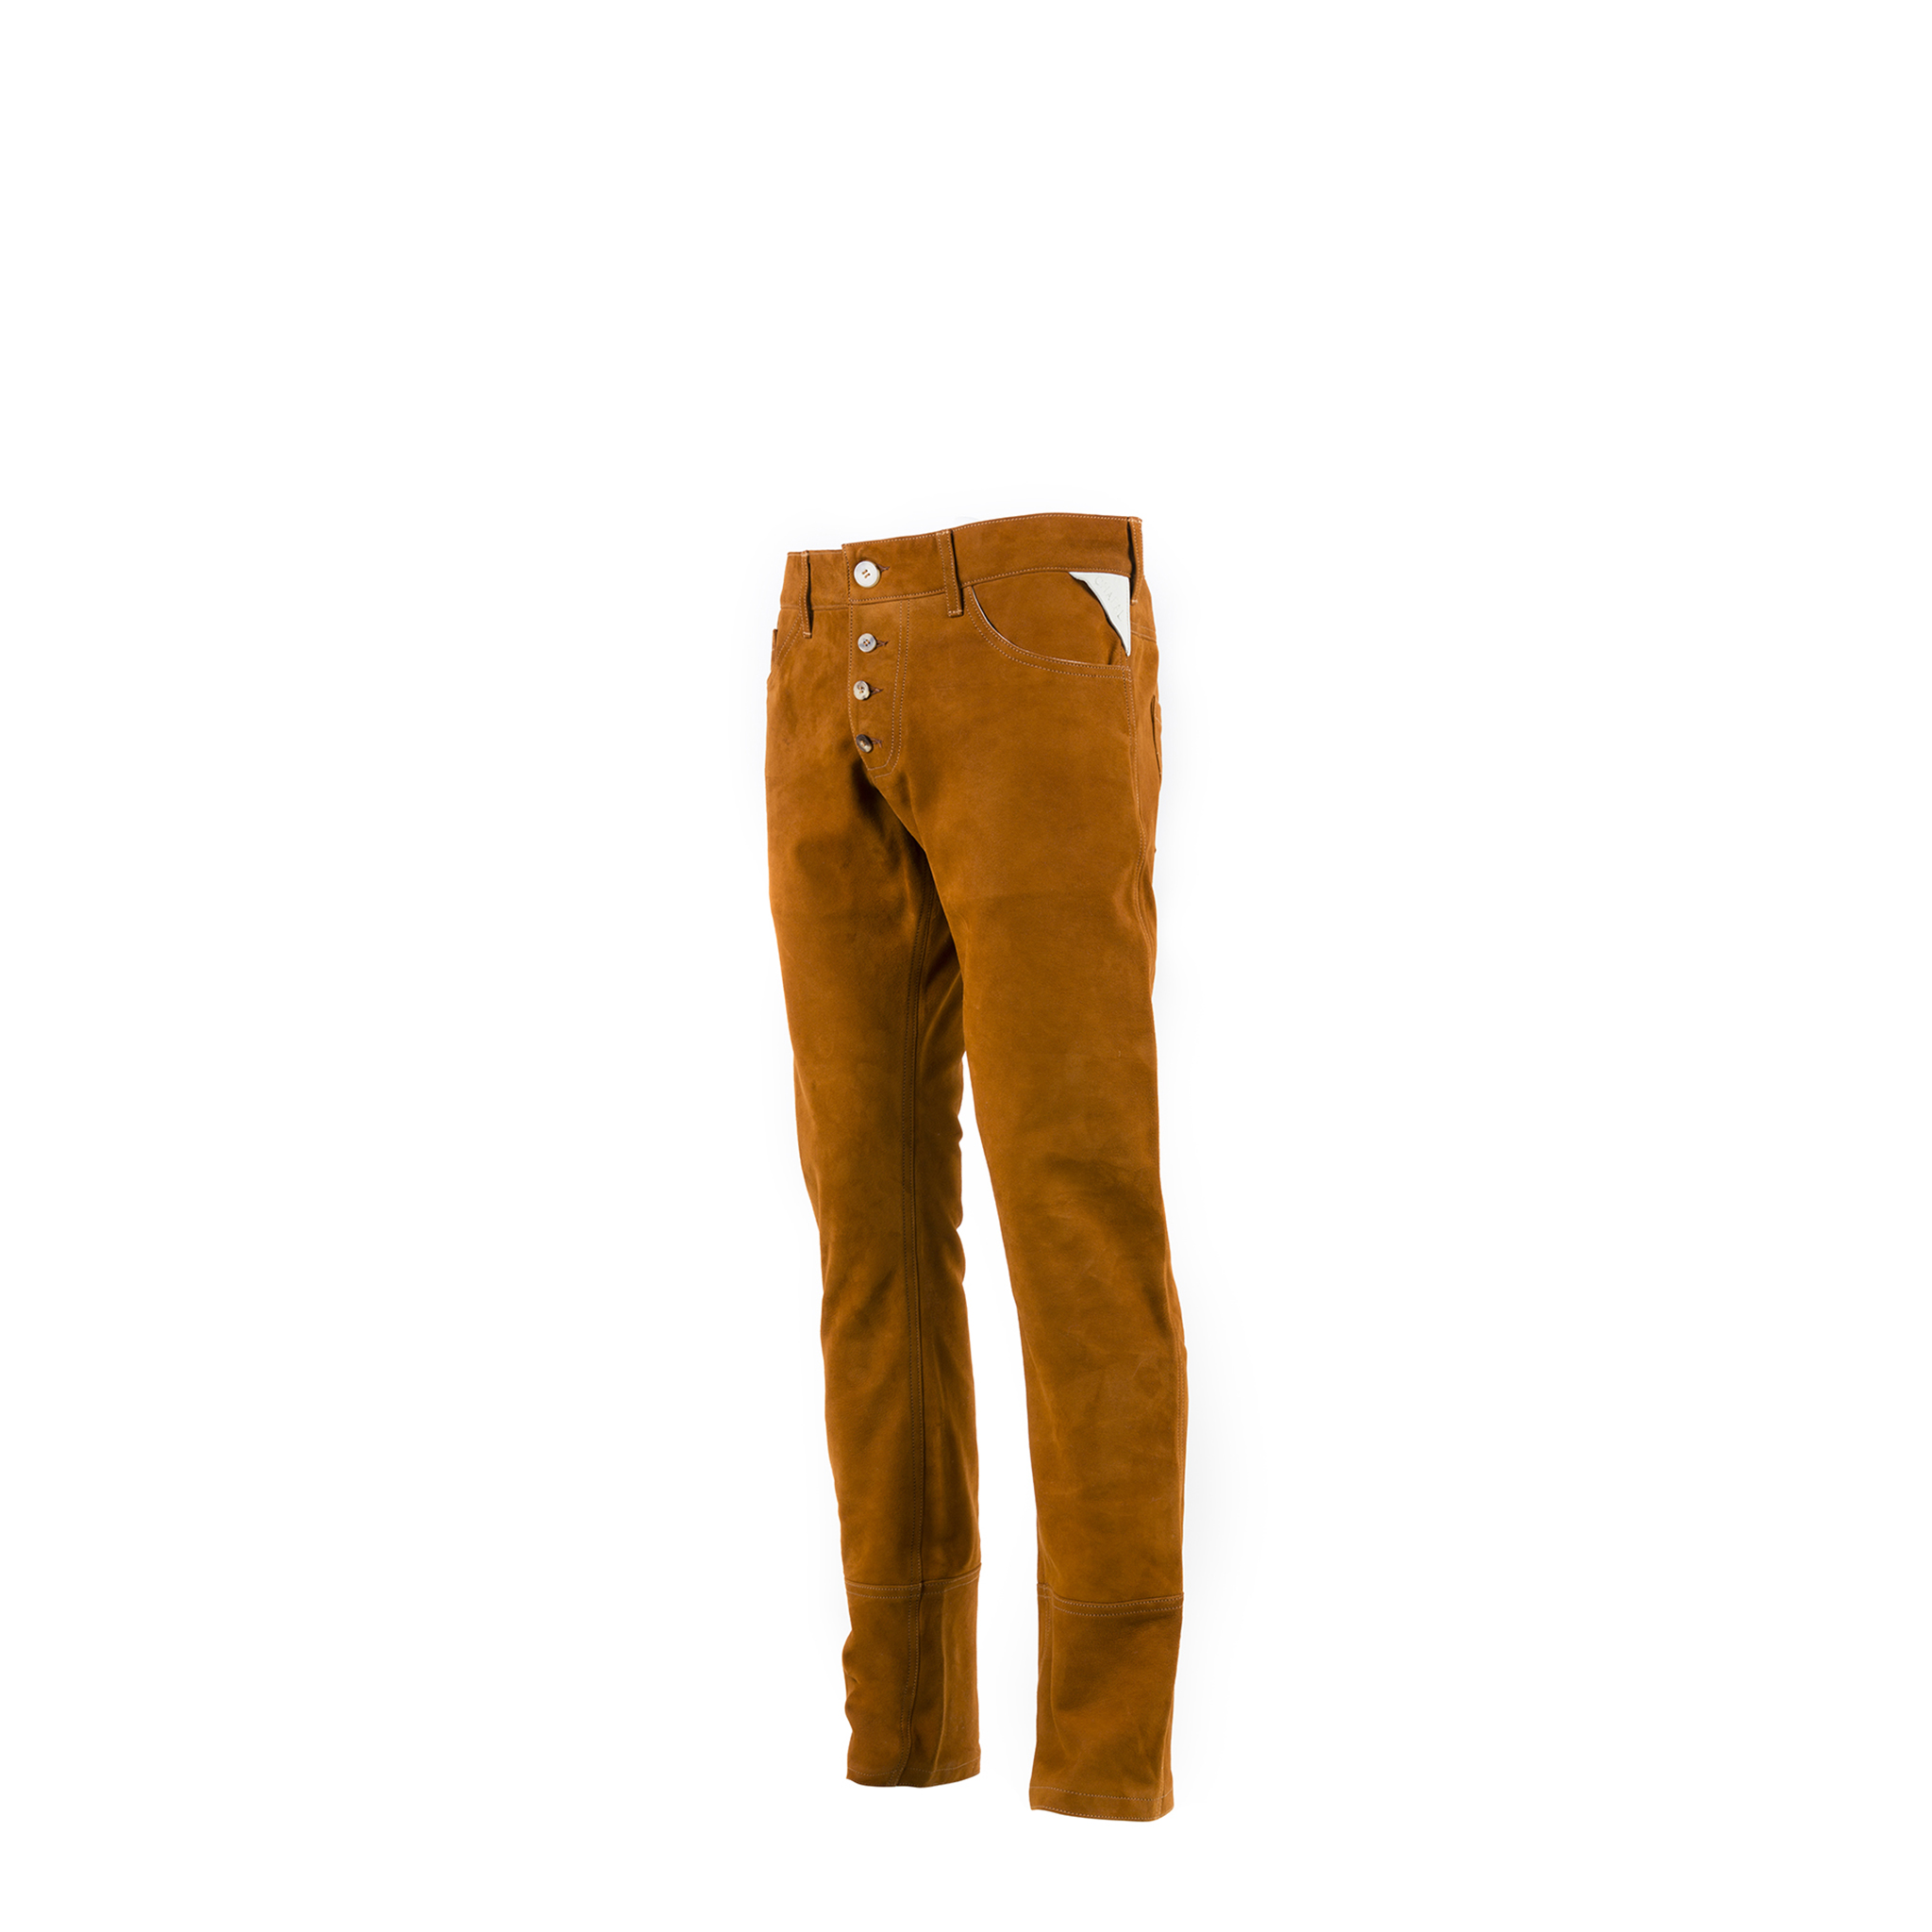 Pants 2008A - Suede leather - Suzy color